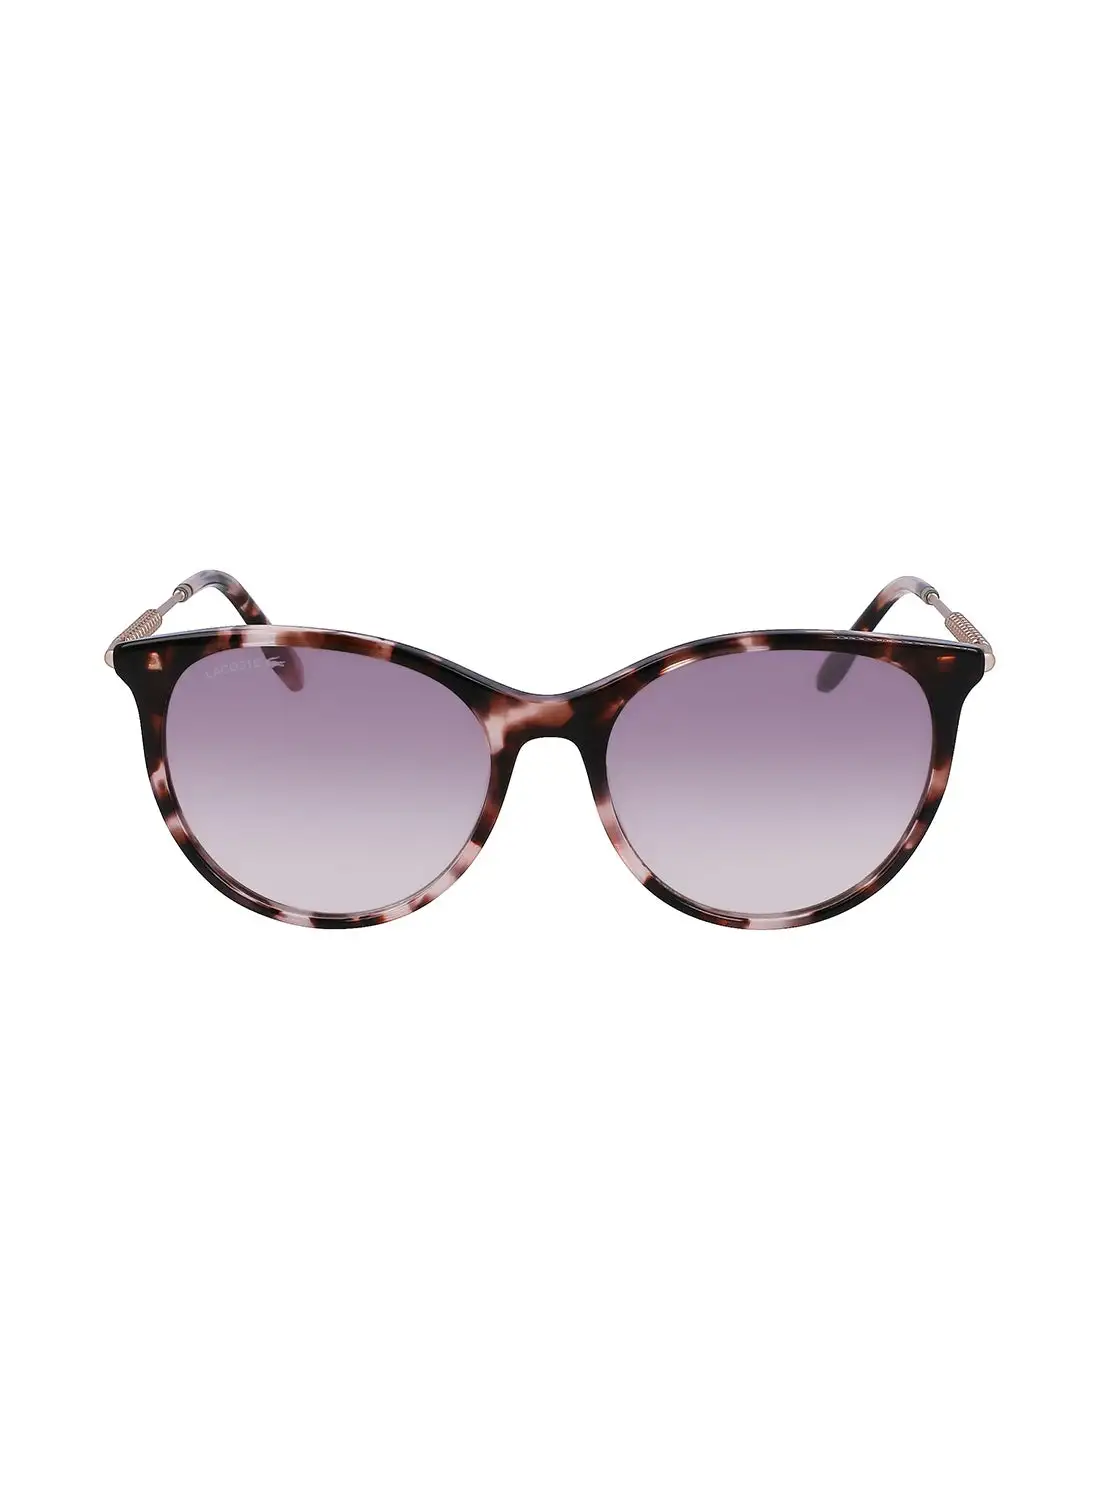 LACOSTE Women's Oval Sunglasses - L993S-610-5417 - Lens Size: 54 Mm